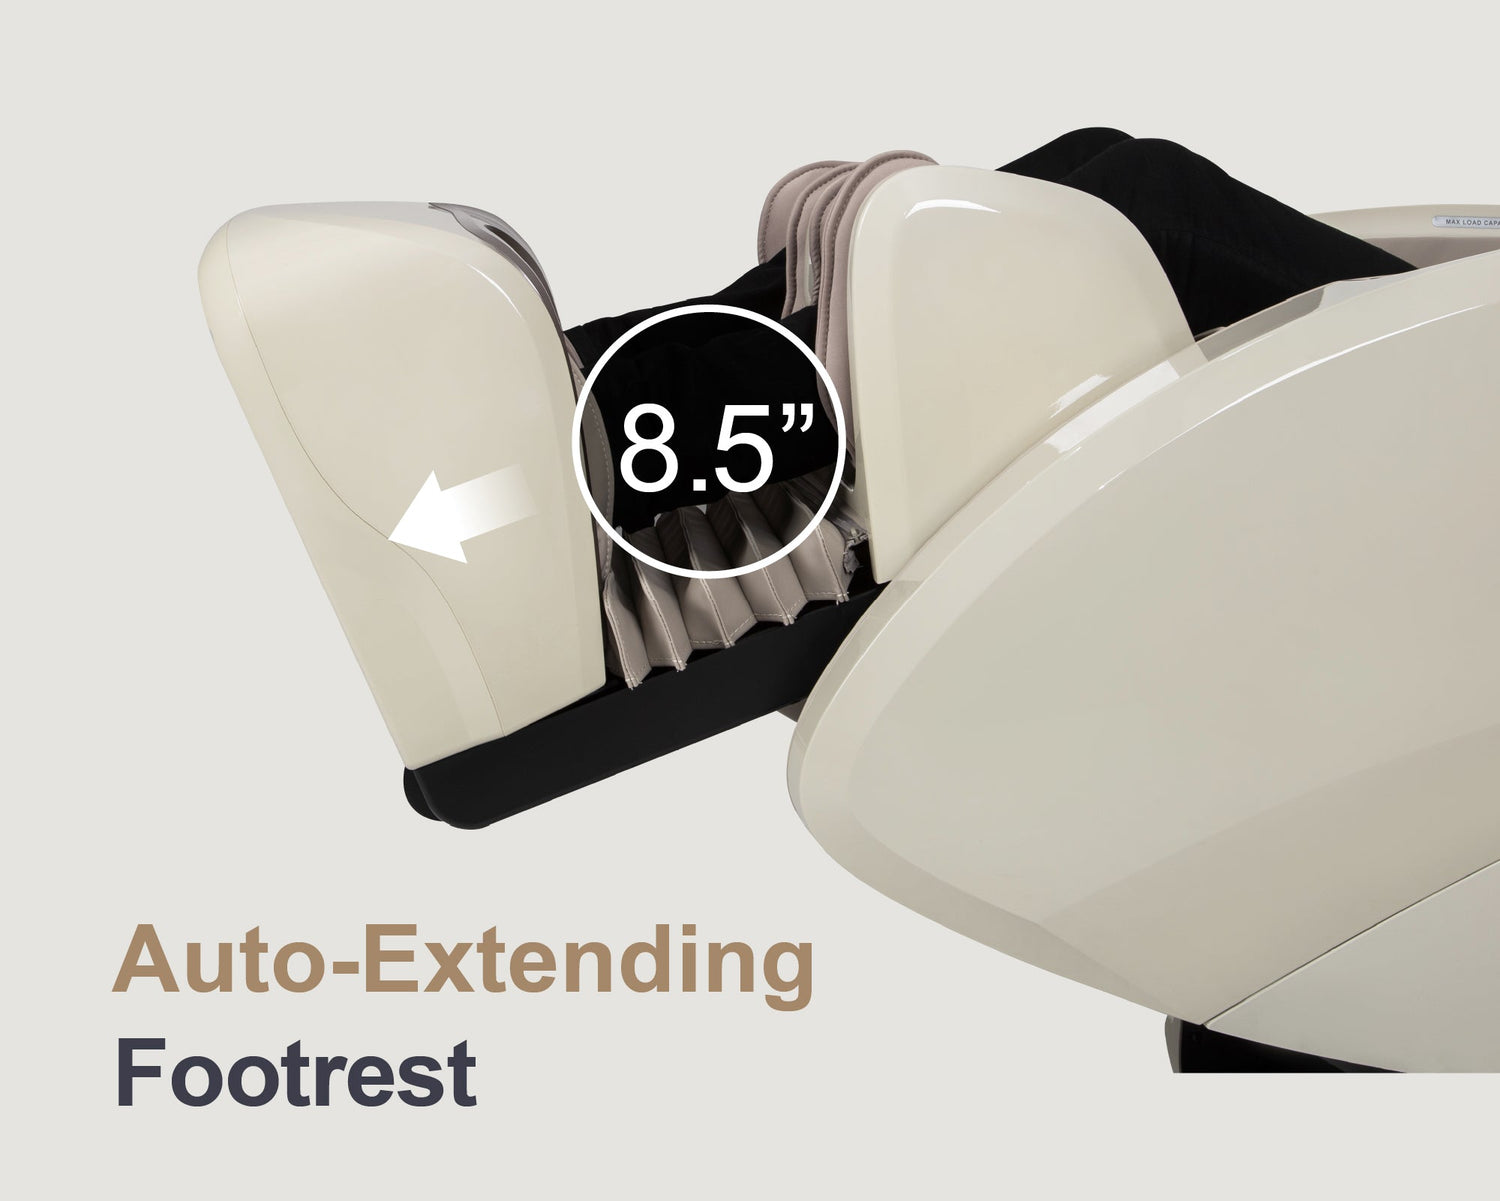 Auto-Extending Footrest